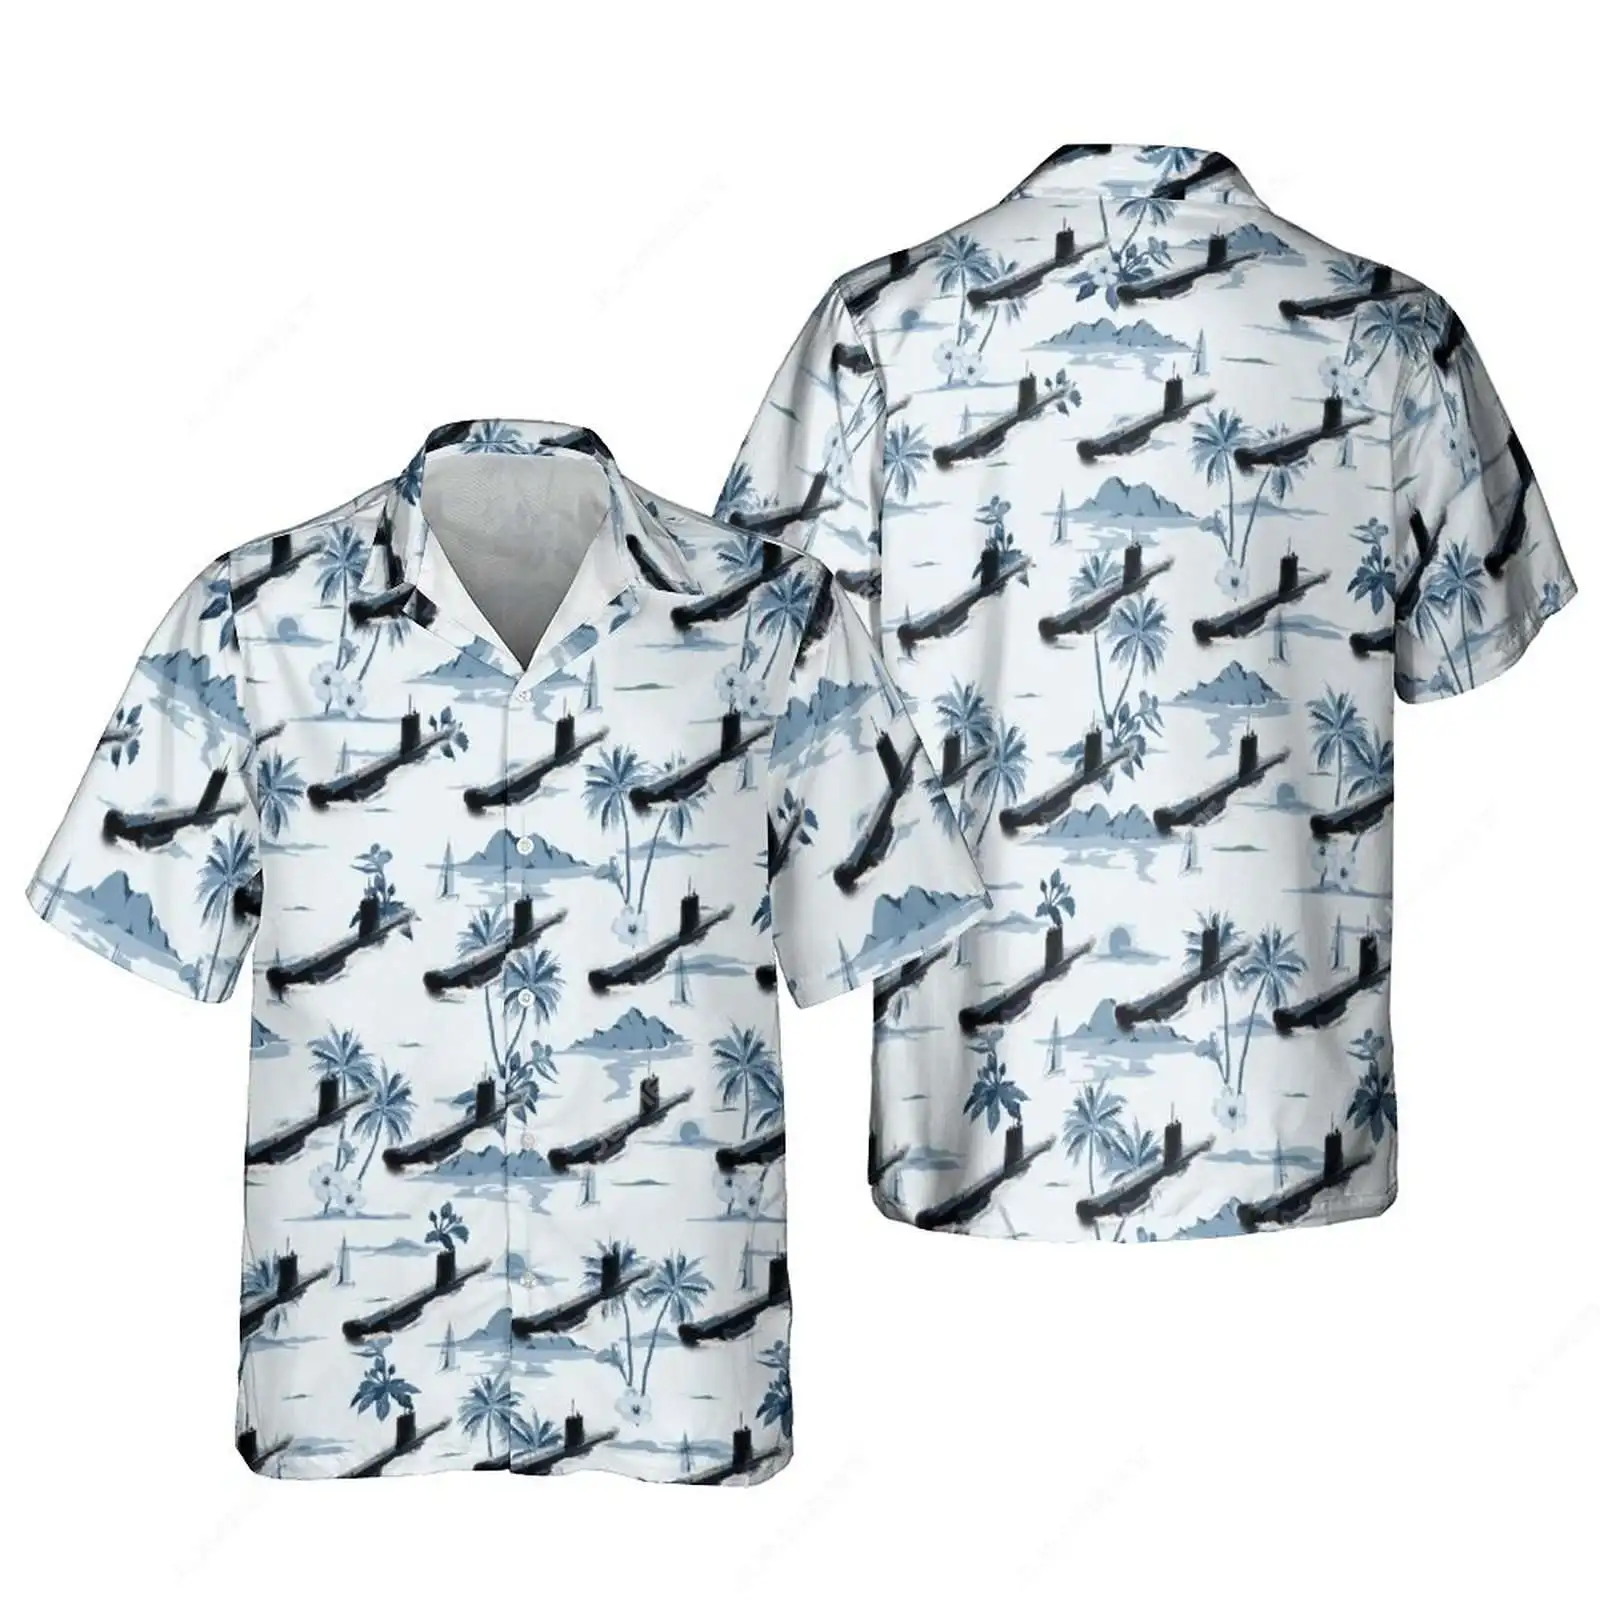 

Jumeast мужские Гавайские рубашки с 3D-принтом пальмы самолета, художественное ремесло, военный корабль, пляжные блузки, вертолет, камиза, одежда